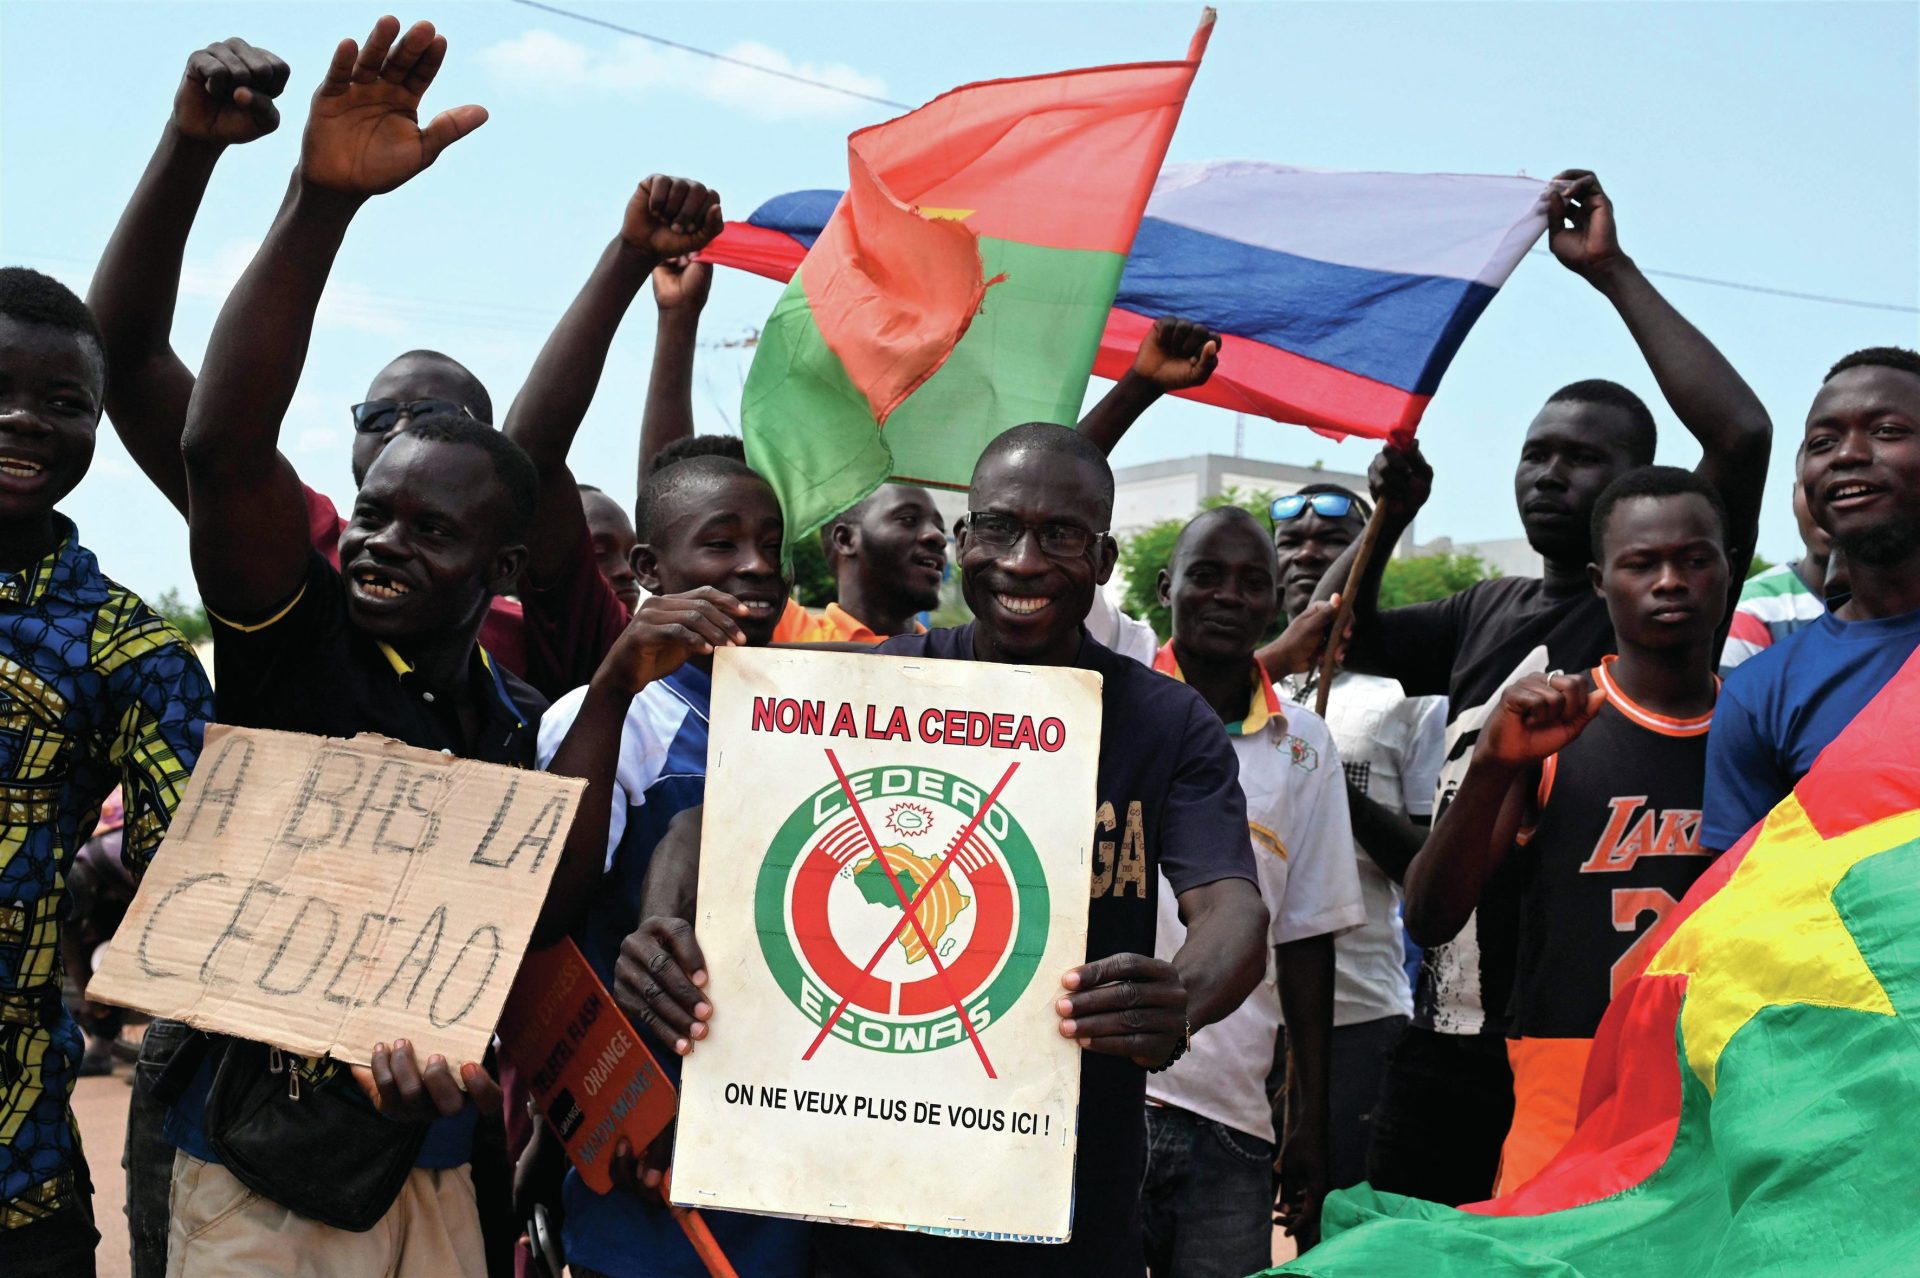 Saída de Mali, Burkina Faso e Níger da CEDEAO complica região do Sahel